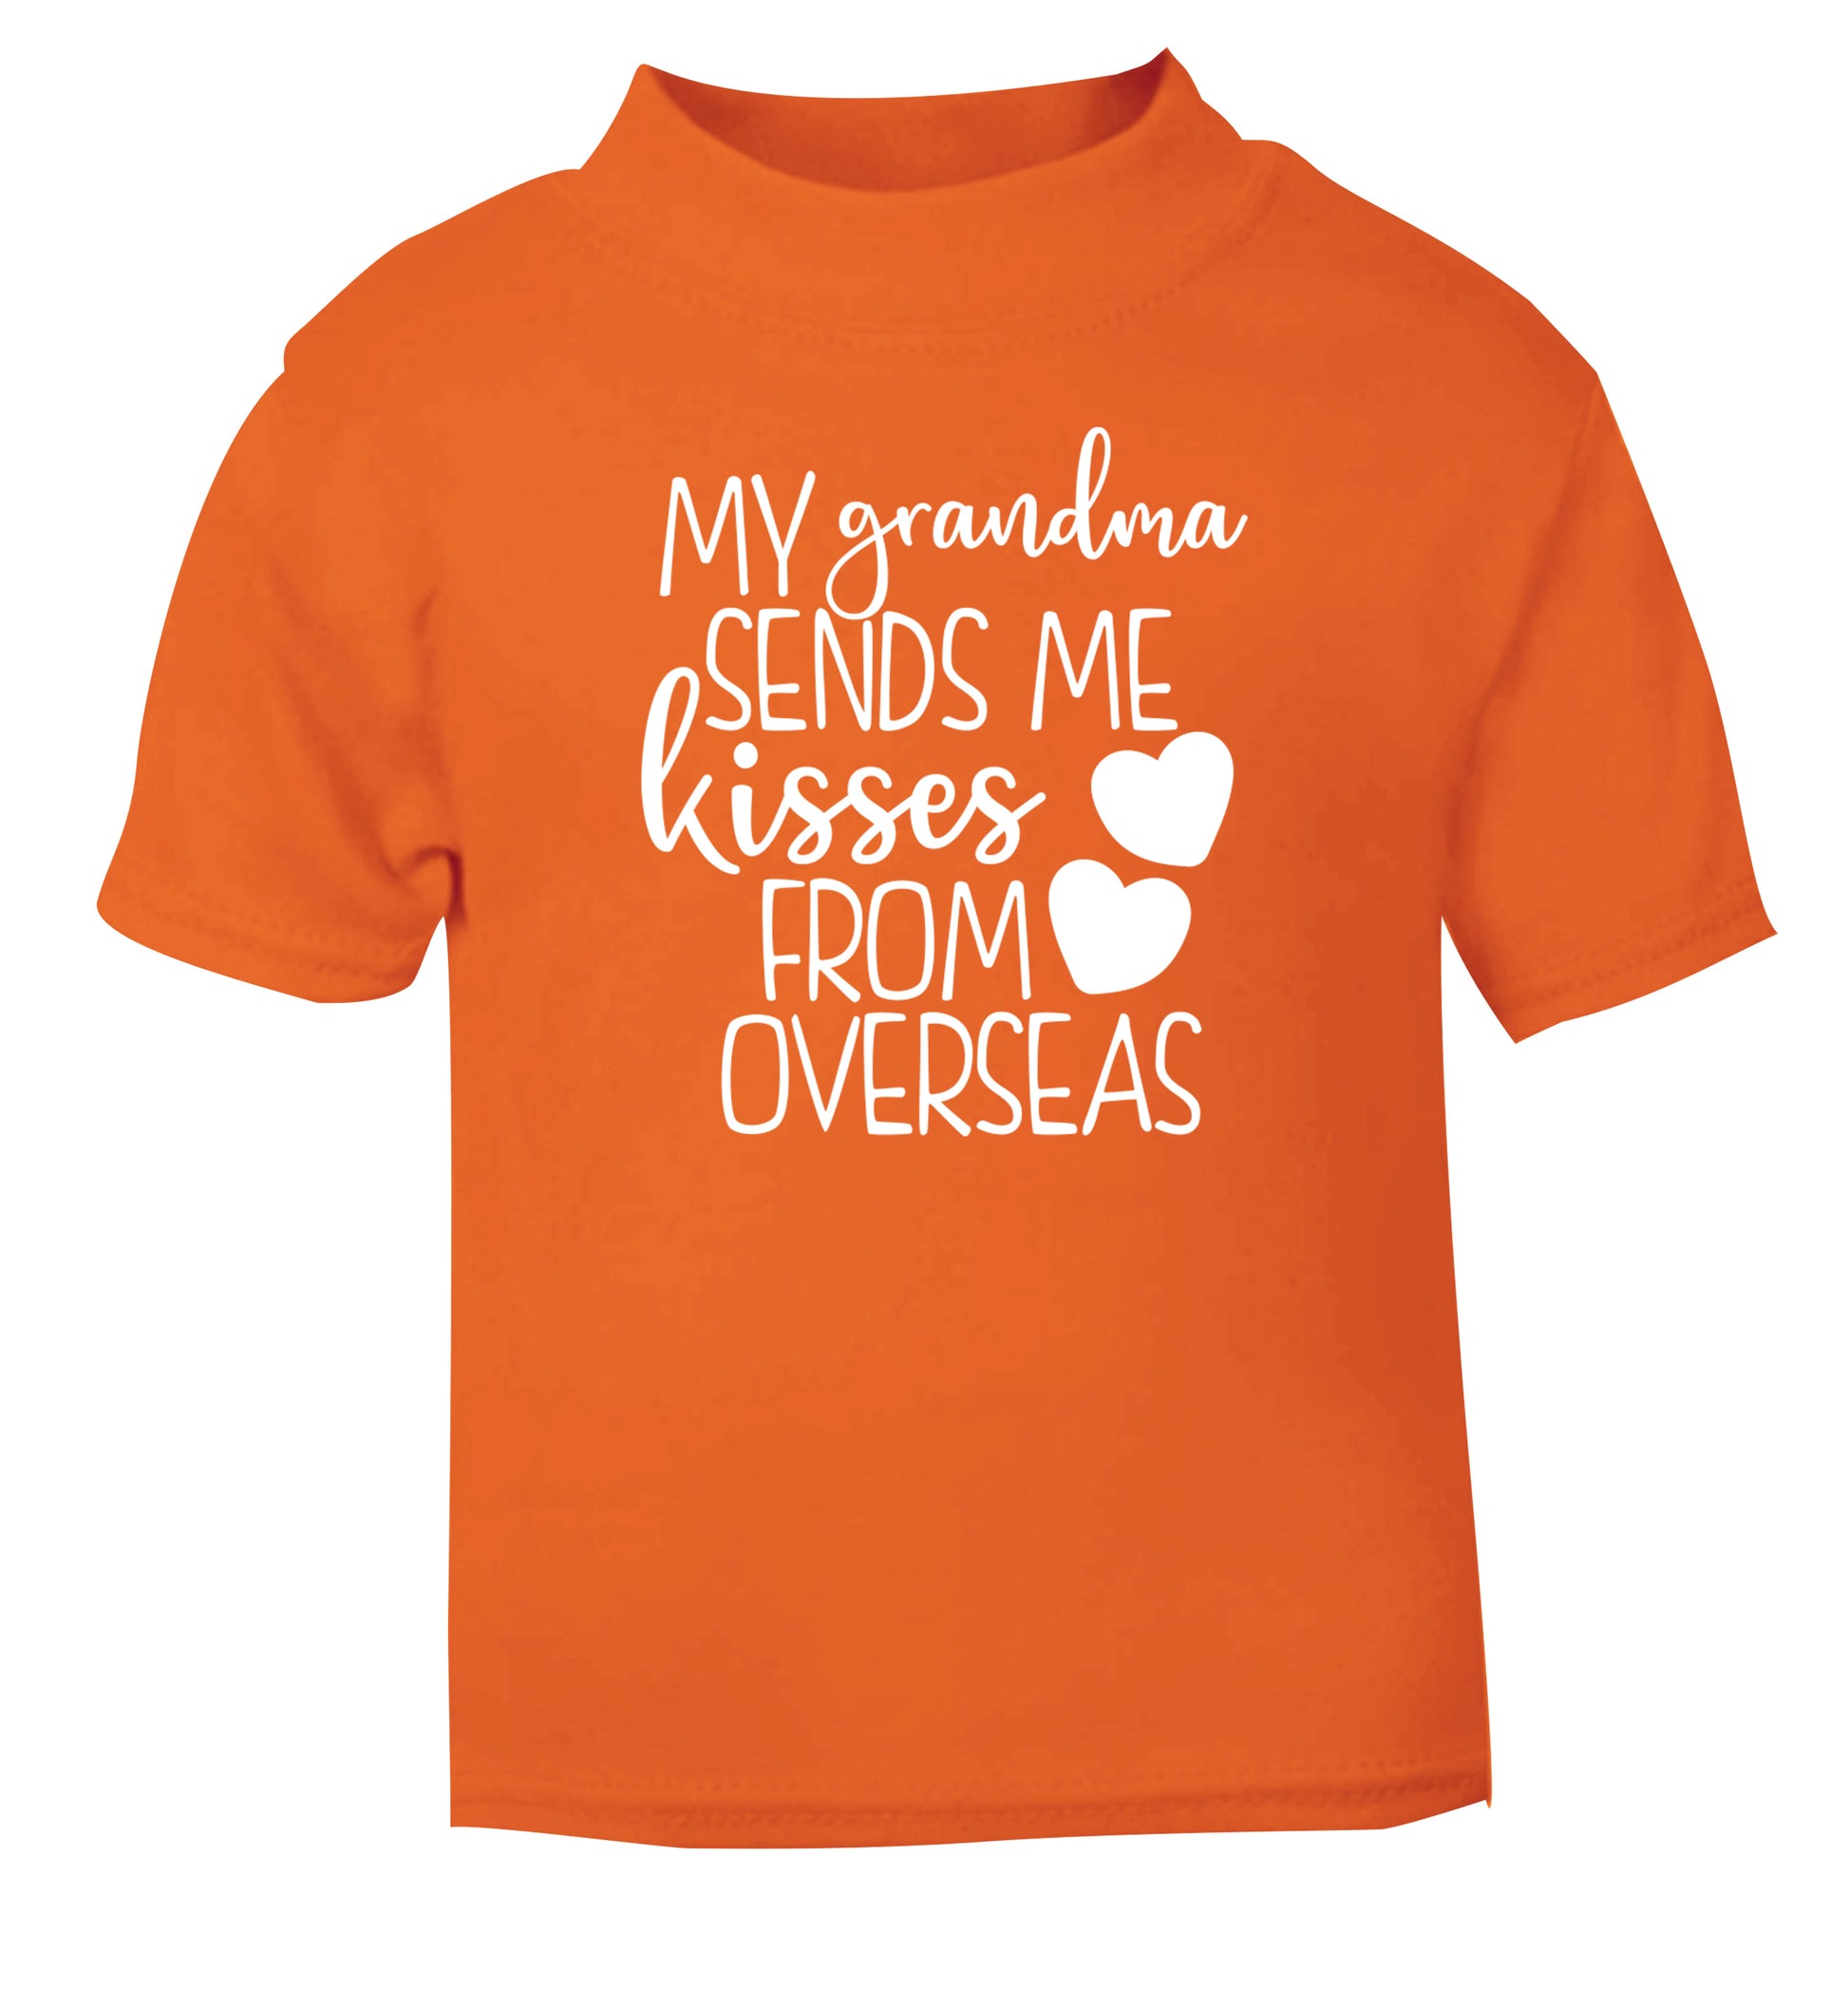 My Grandma sends me kisses from overseas orange Baby Toddler Tshirt 2 Years